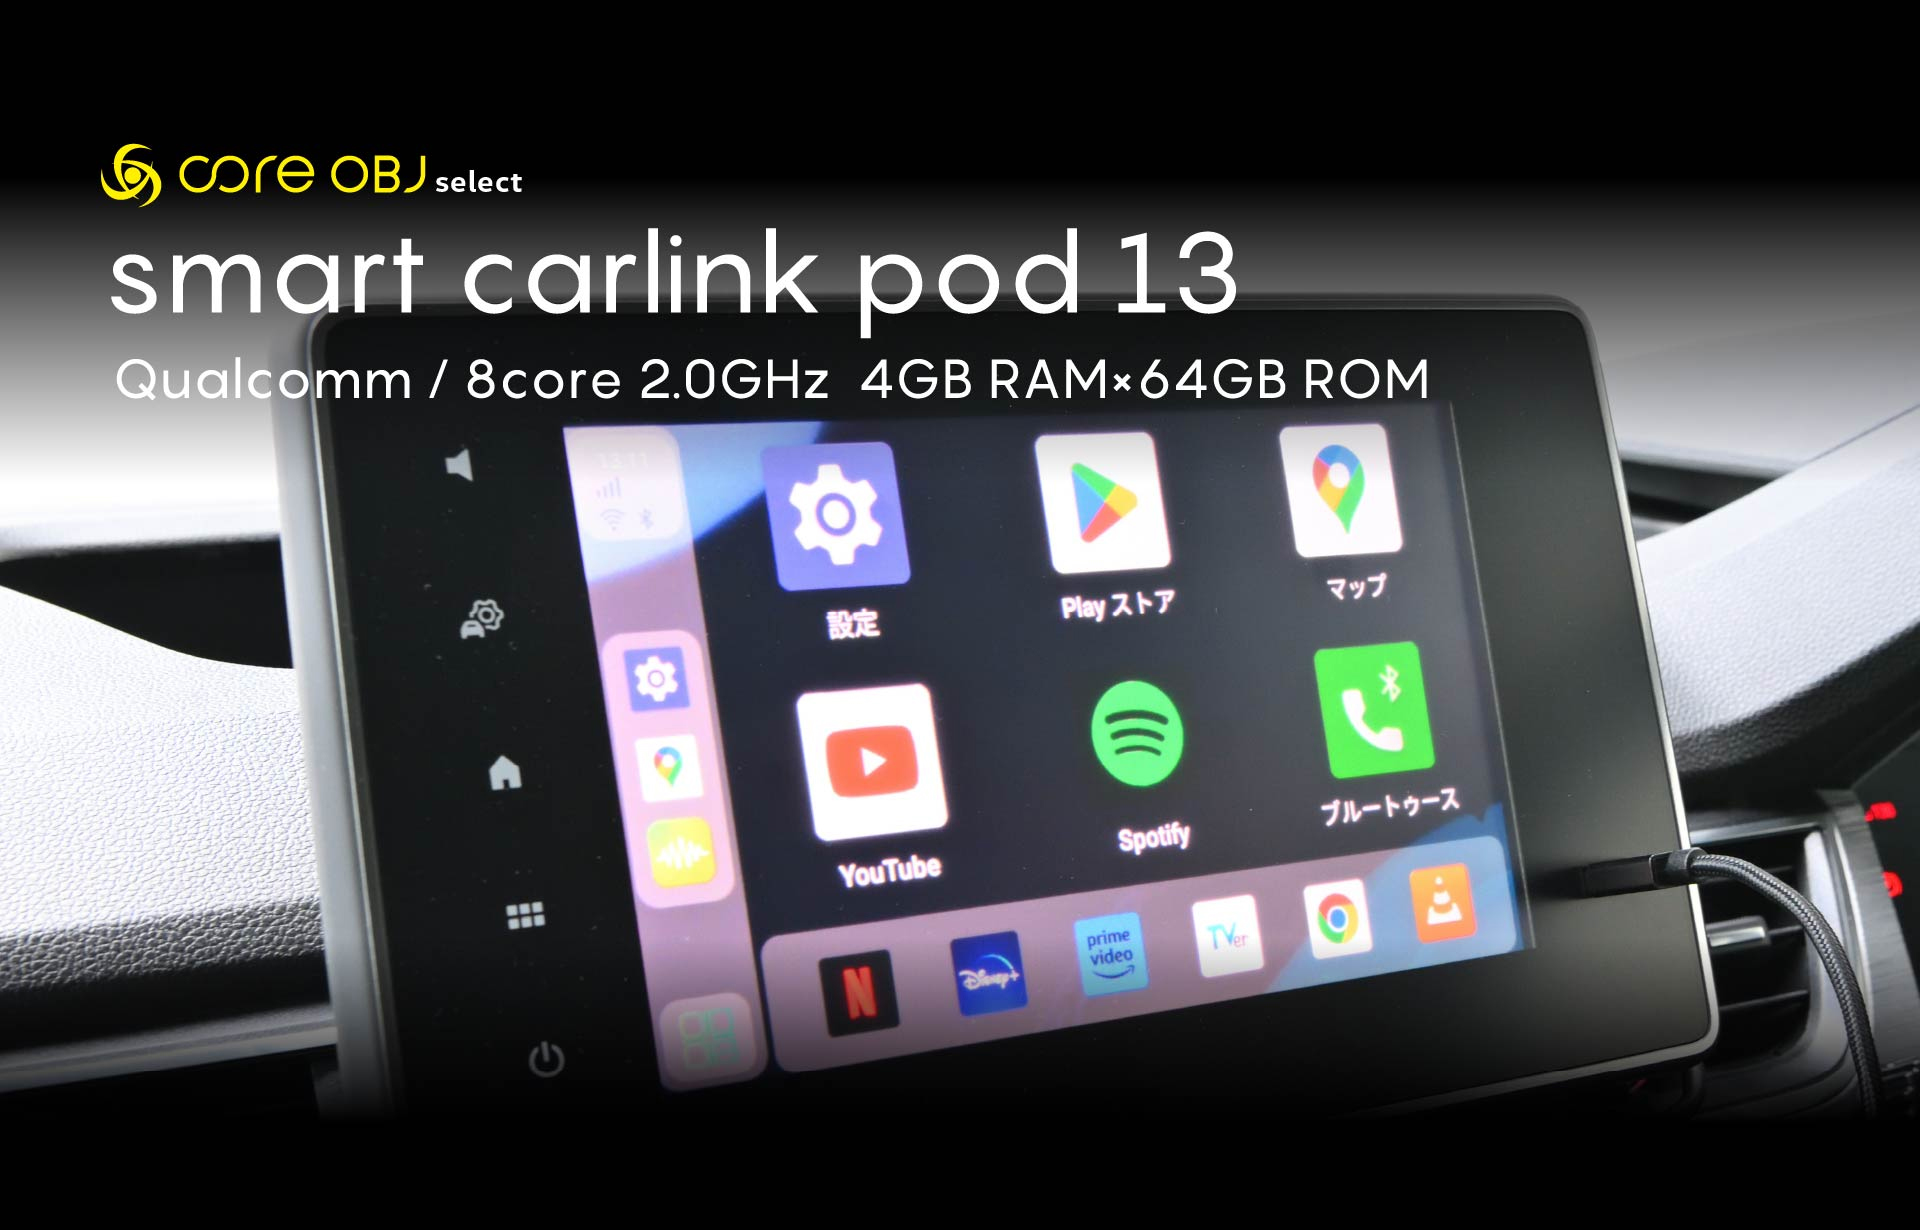 コードテック CS-SCL-005 core OBJ select smart carlink pod pro 13 